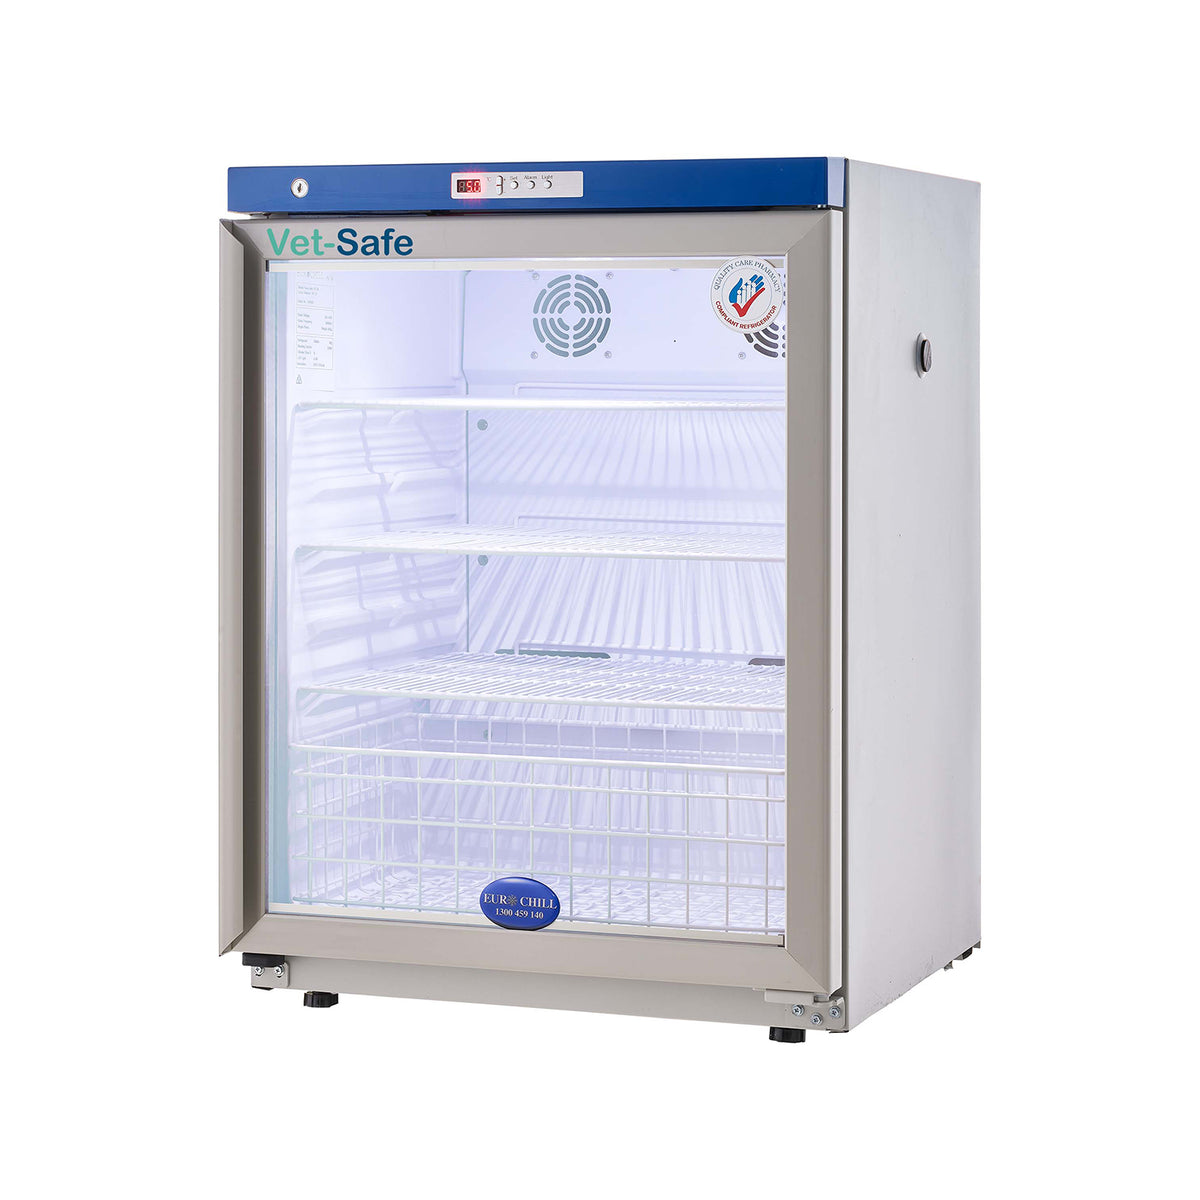 Vet-Safe 118 Veterinary Vaccine Refrigerator